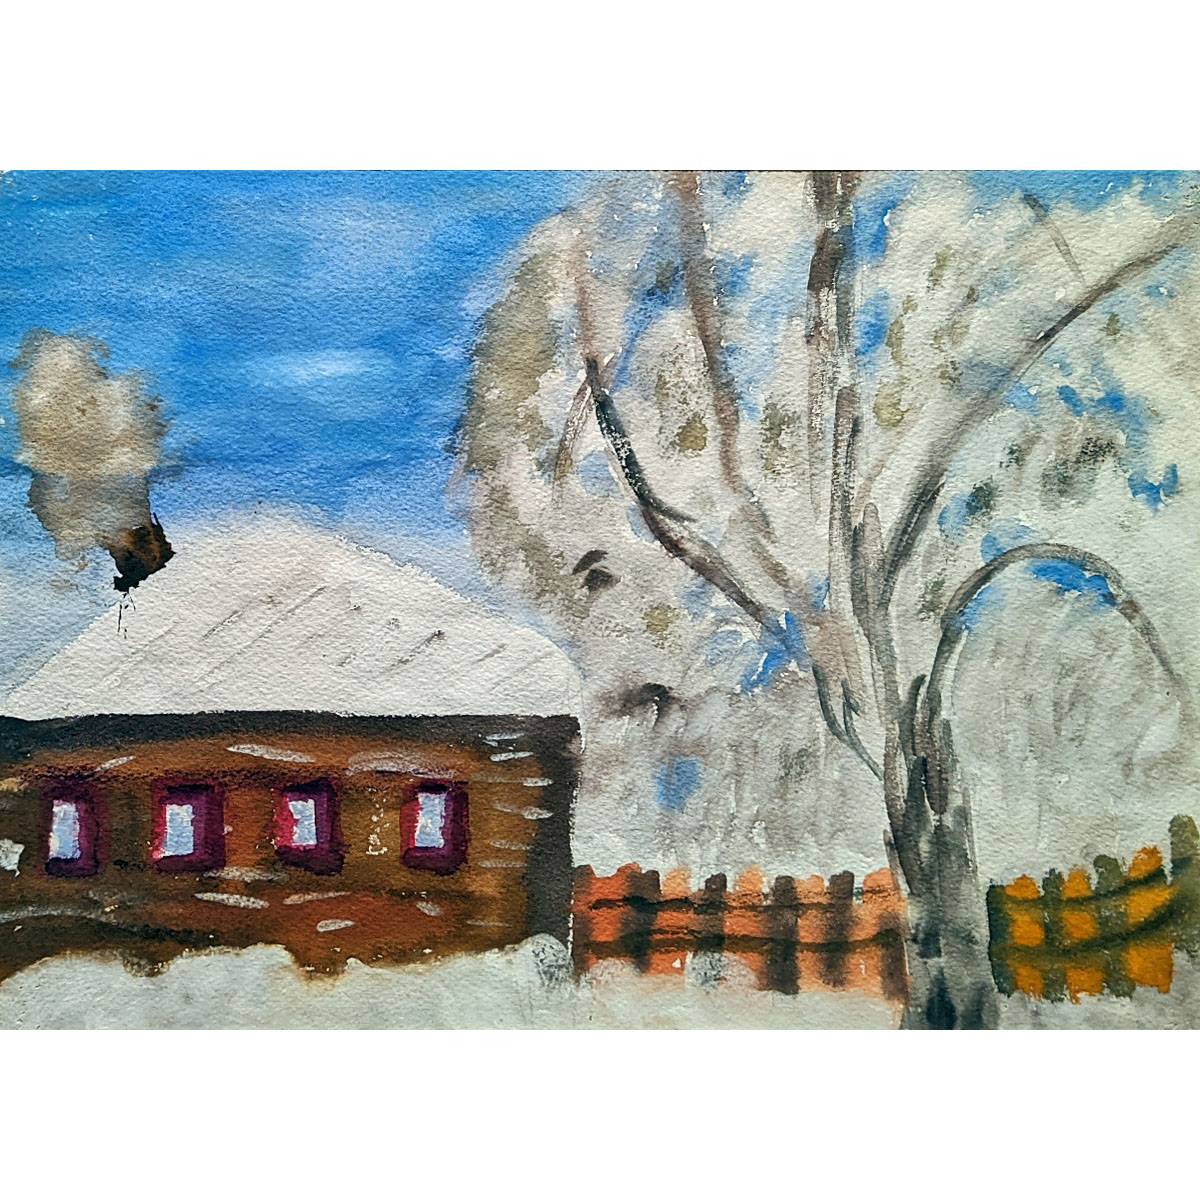 Анна Трофимова. Зима – морозно. 1975, Алапаевск